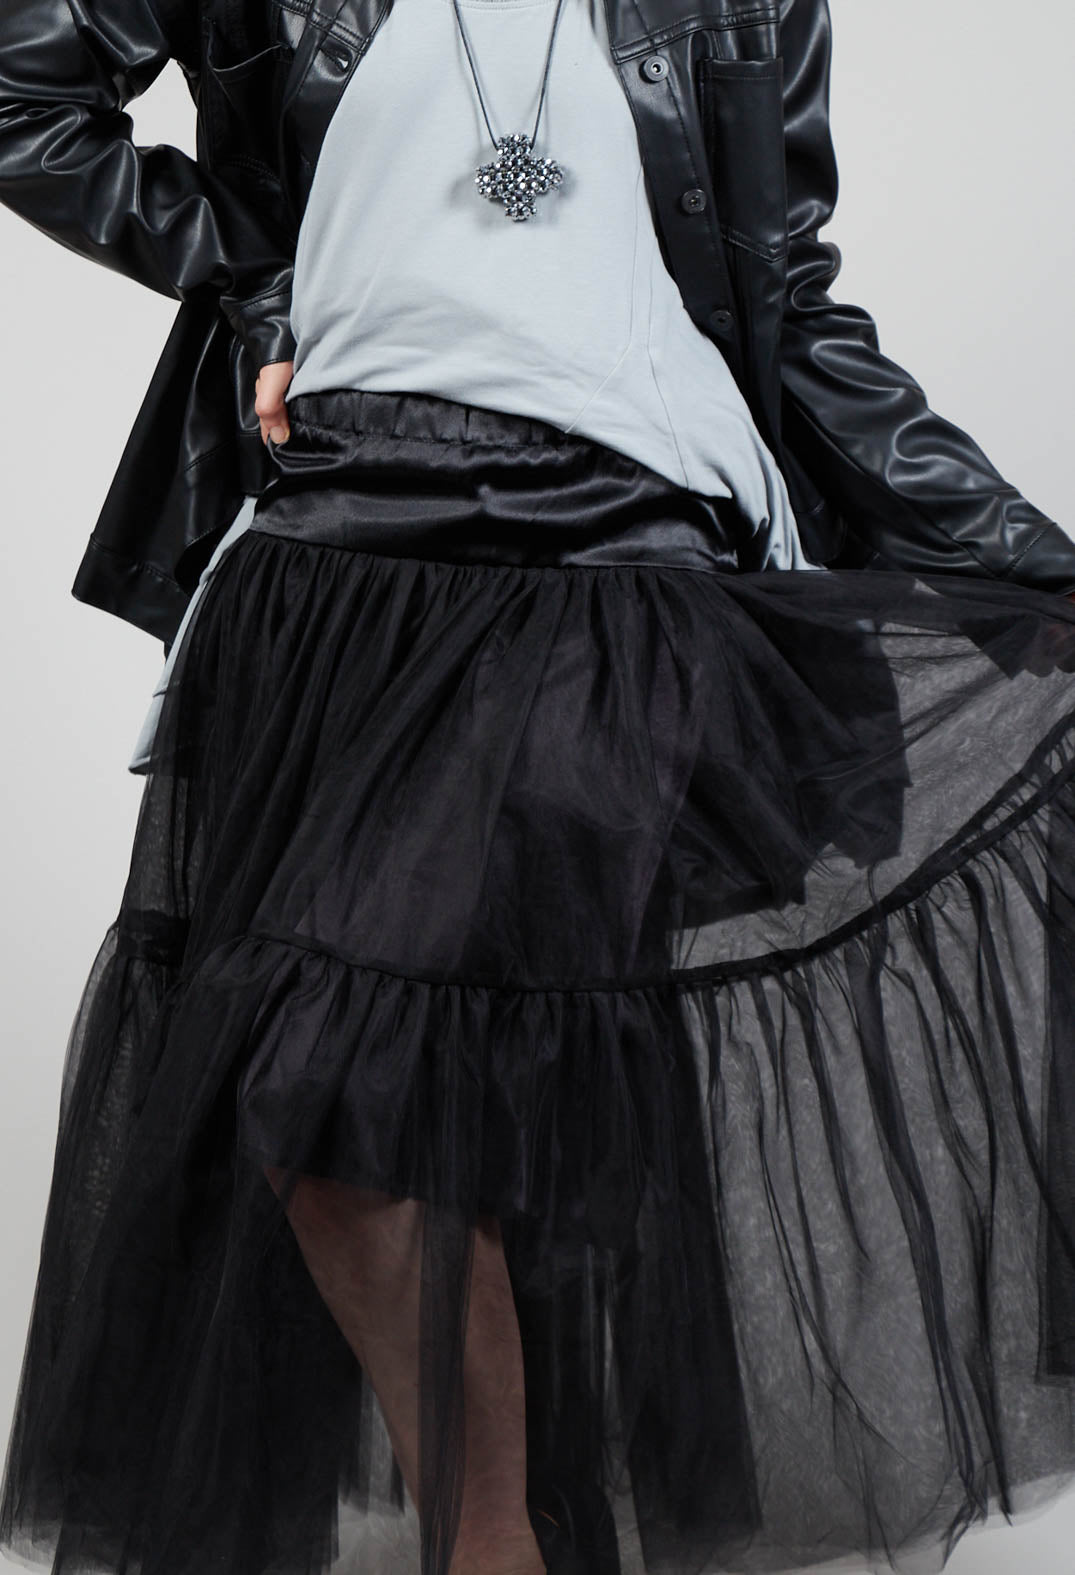 TuTuPlu Skirt in Black